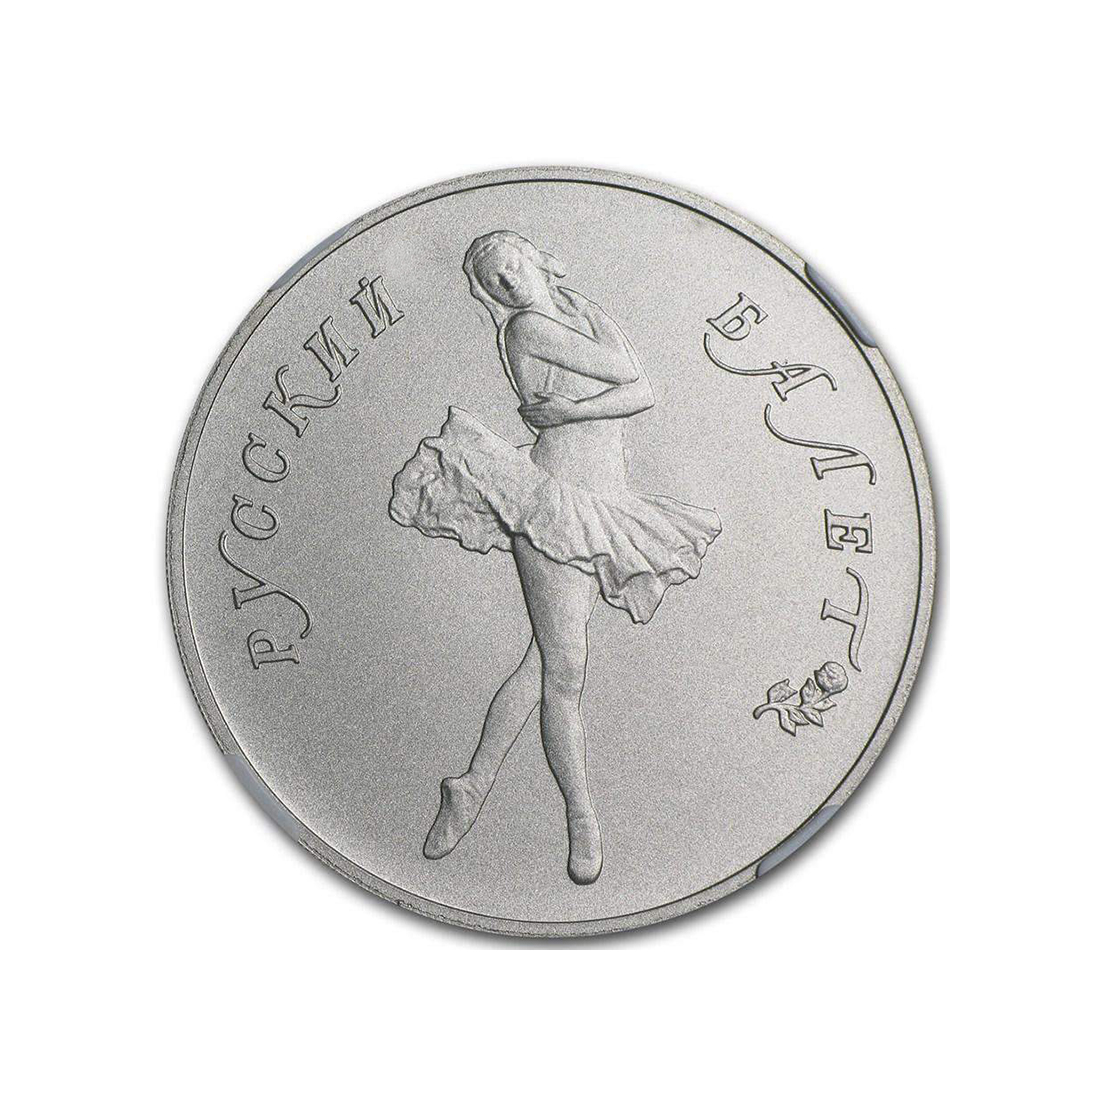 Russian Palladium Ballerina Coin